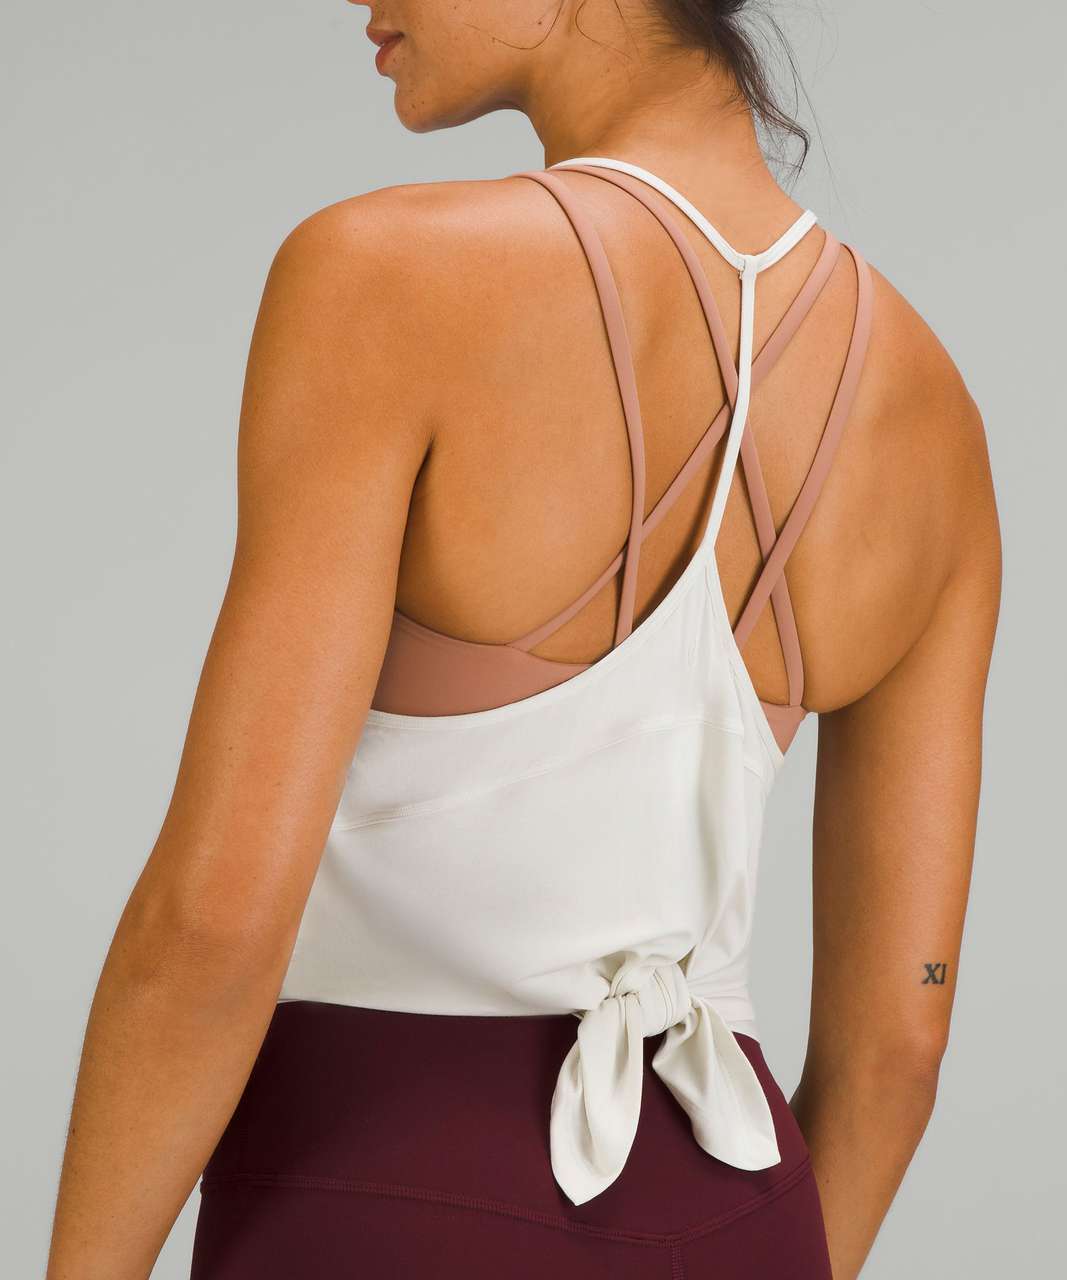 Lululemon modal silk yoga tank, Women's Fashion, Activewear on Carousell